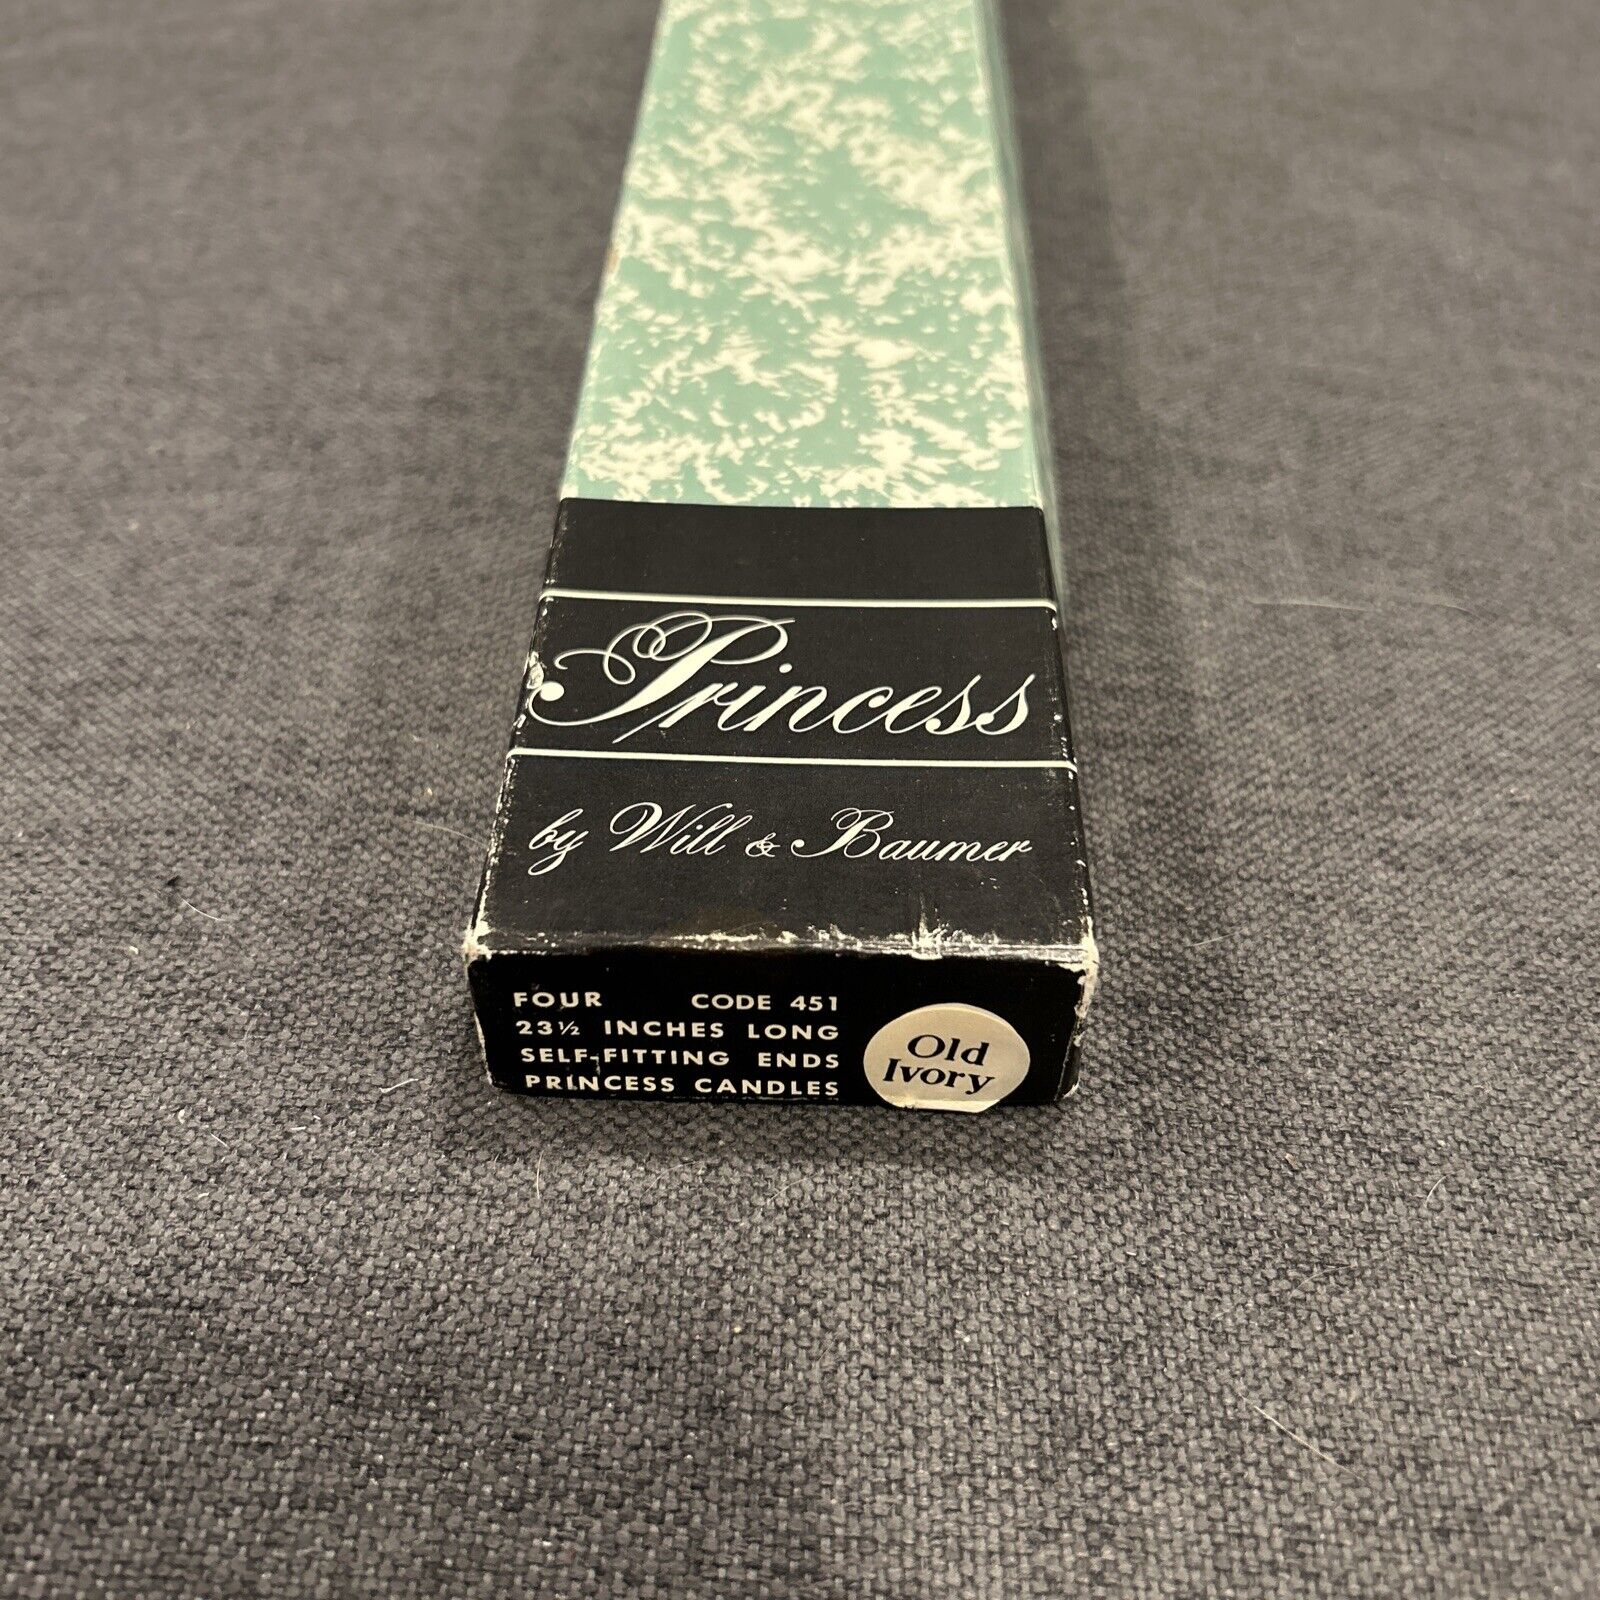 (4) Will & Baumer Princess Candles Extra Long Original Box Old Ivory Syracuse NY